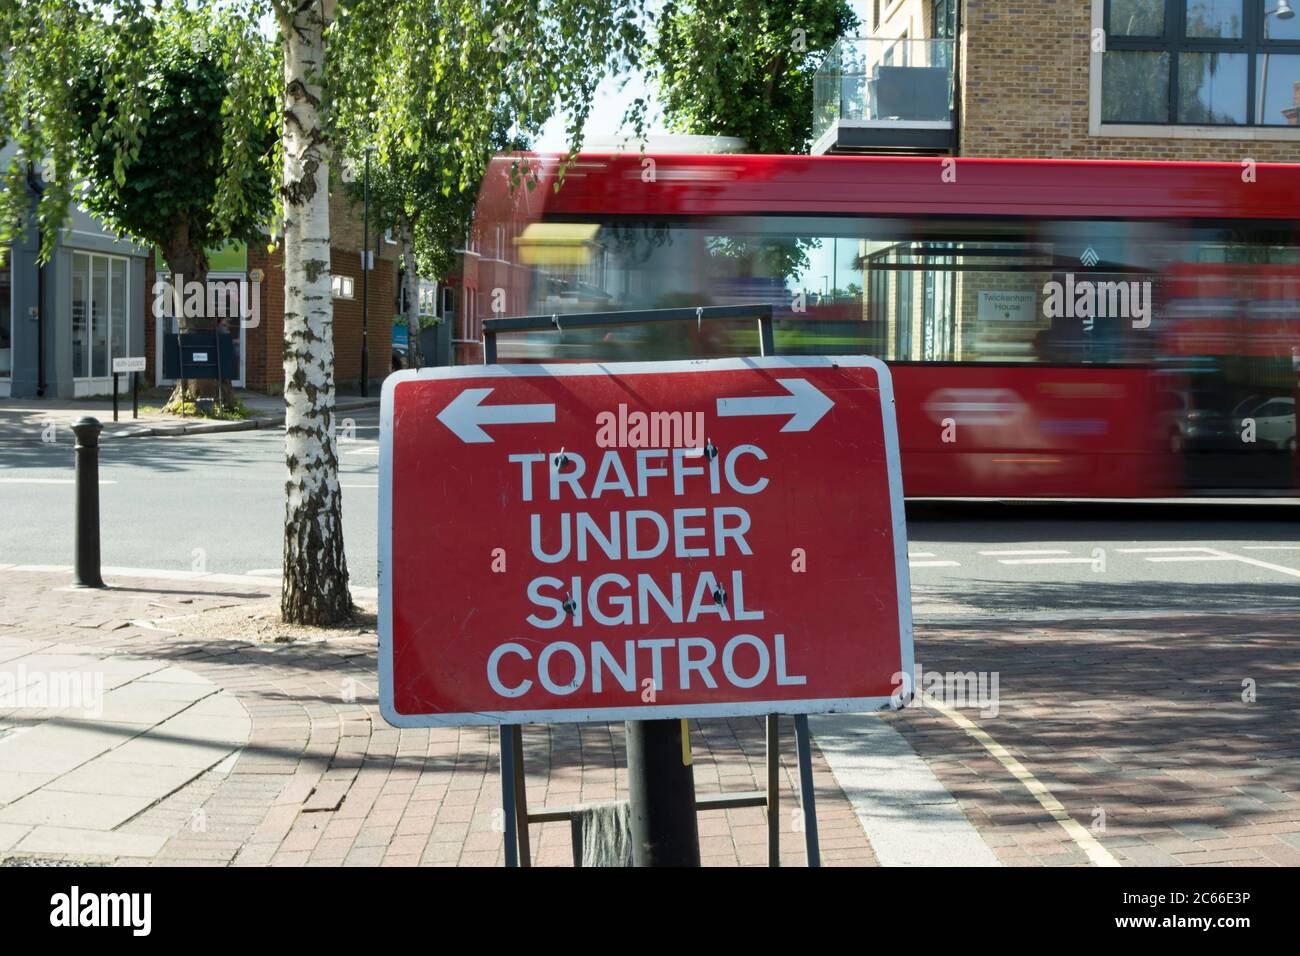 Verkehrszeichen, das den Verkehr auf der Straße anzeigt, die vor uns liegt, und unter Signalkontrolle steht, in twickenham, middlesex, england, mit vorbeifahrenden Bussen, die in unscharfer Bewegung gesehen werden Stockfoto